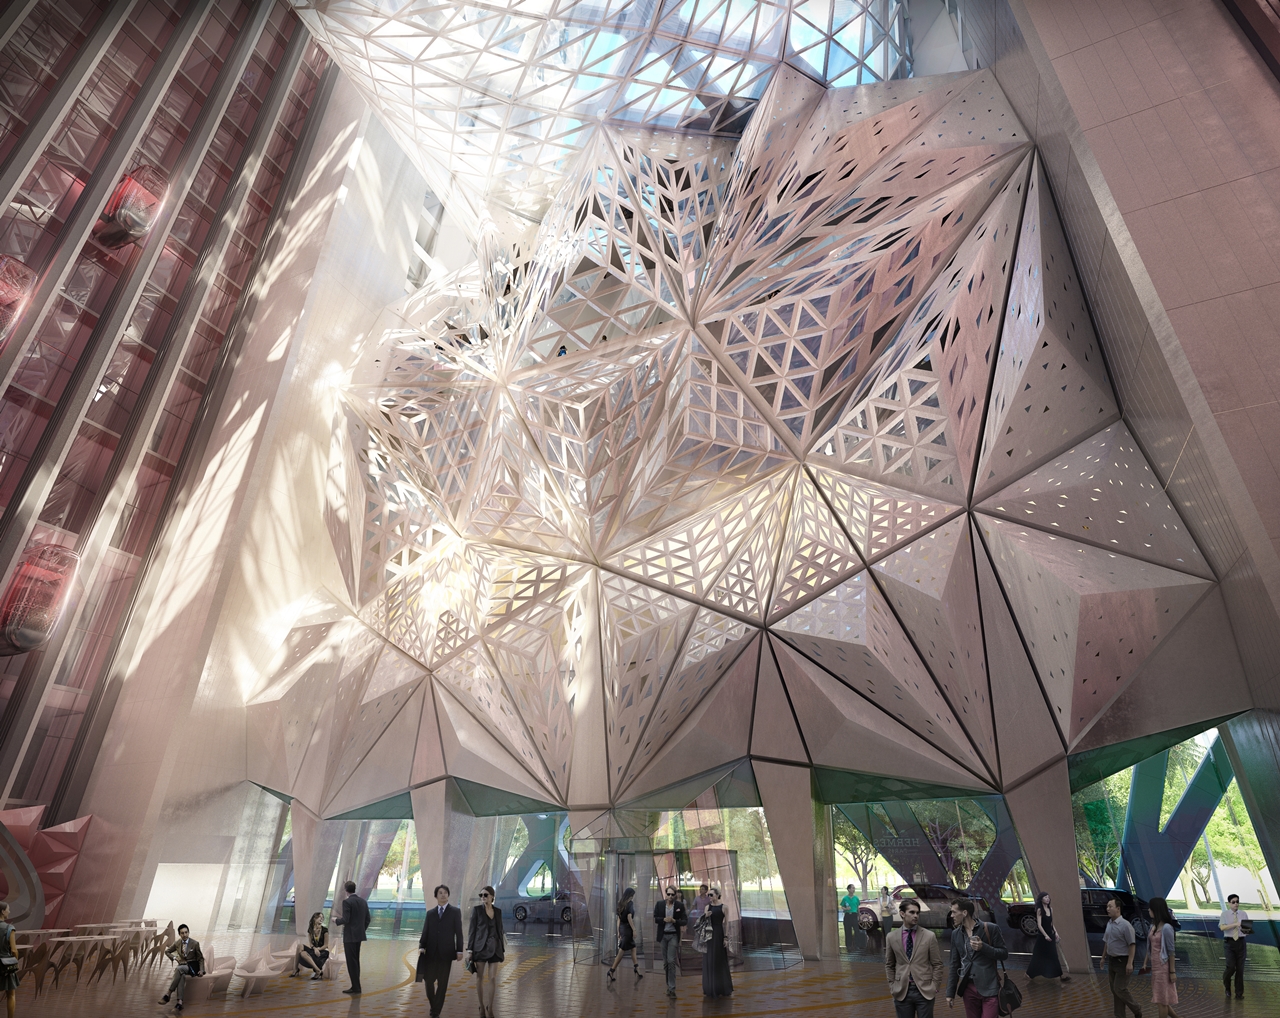 Lobby interior of the new building by Zaha Hadid Architects